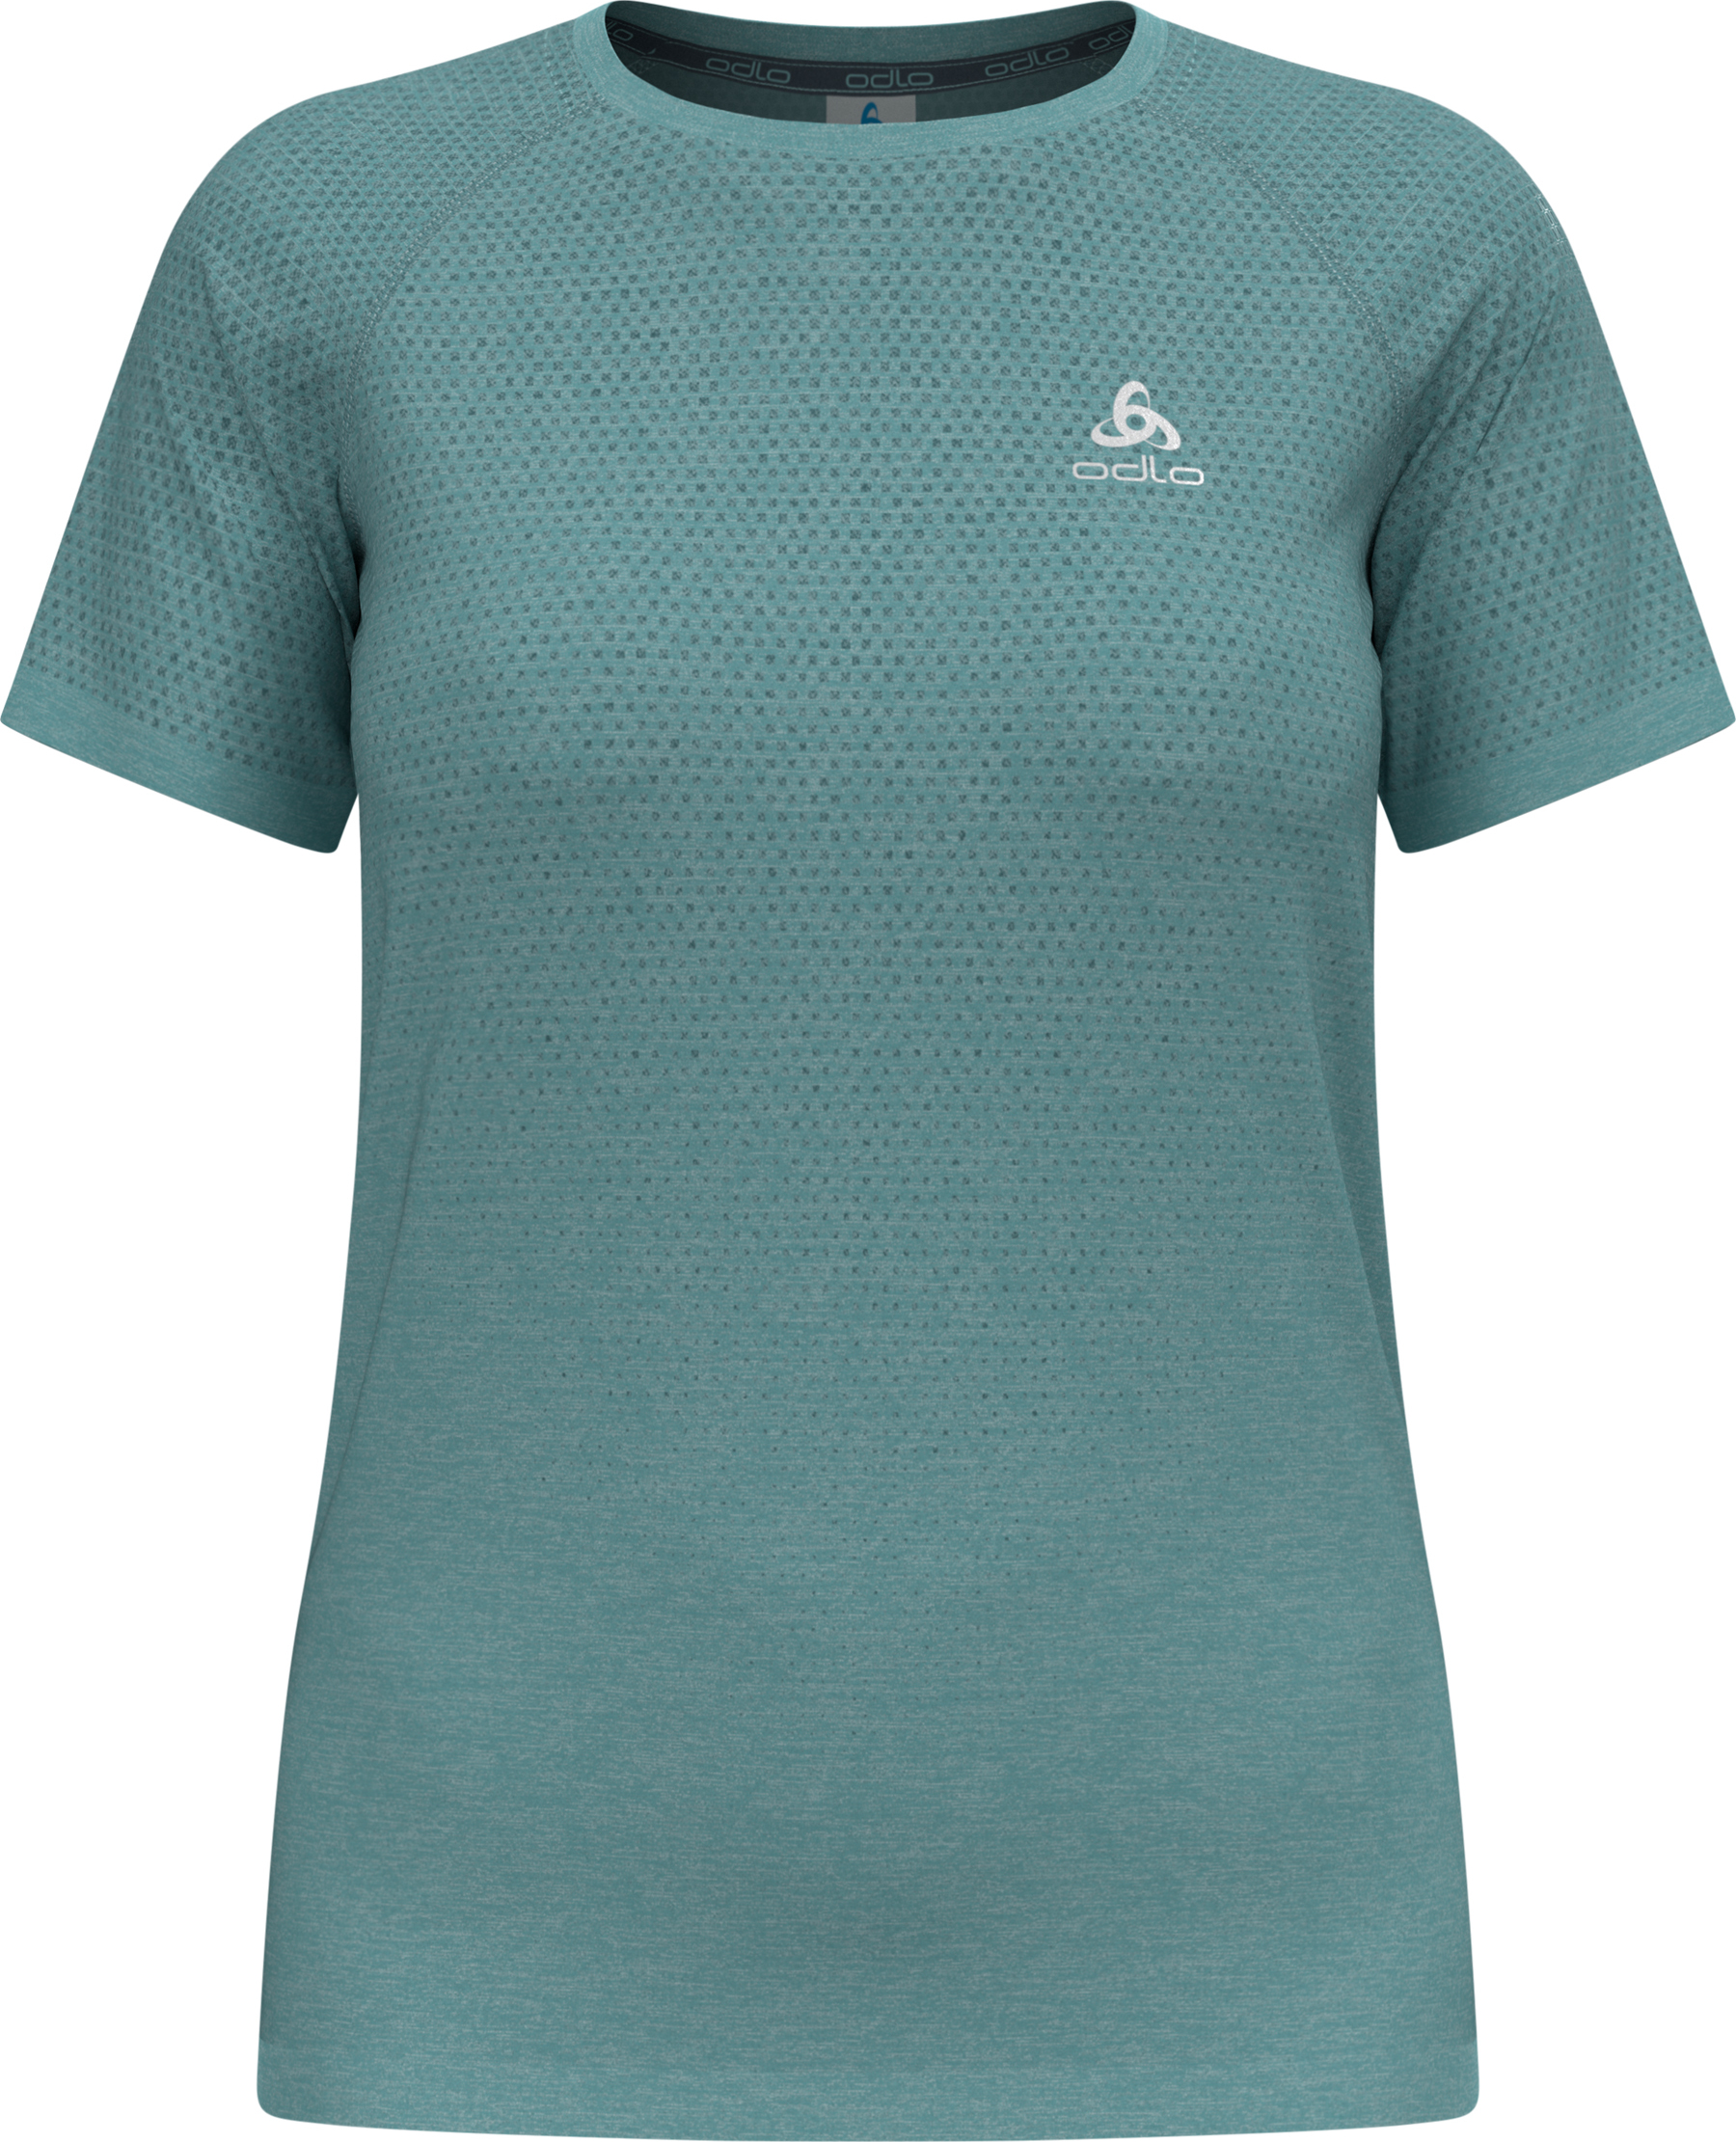 Odlo Women's T-shirt Crew Neck S/S Essential Seamless Aqua Haze Melange